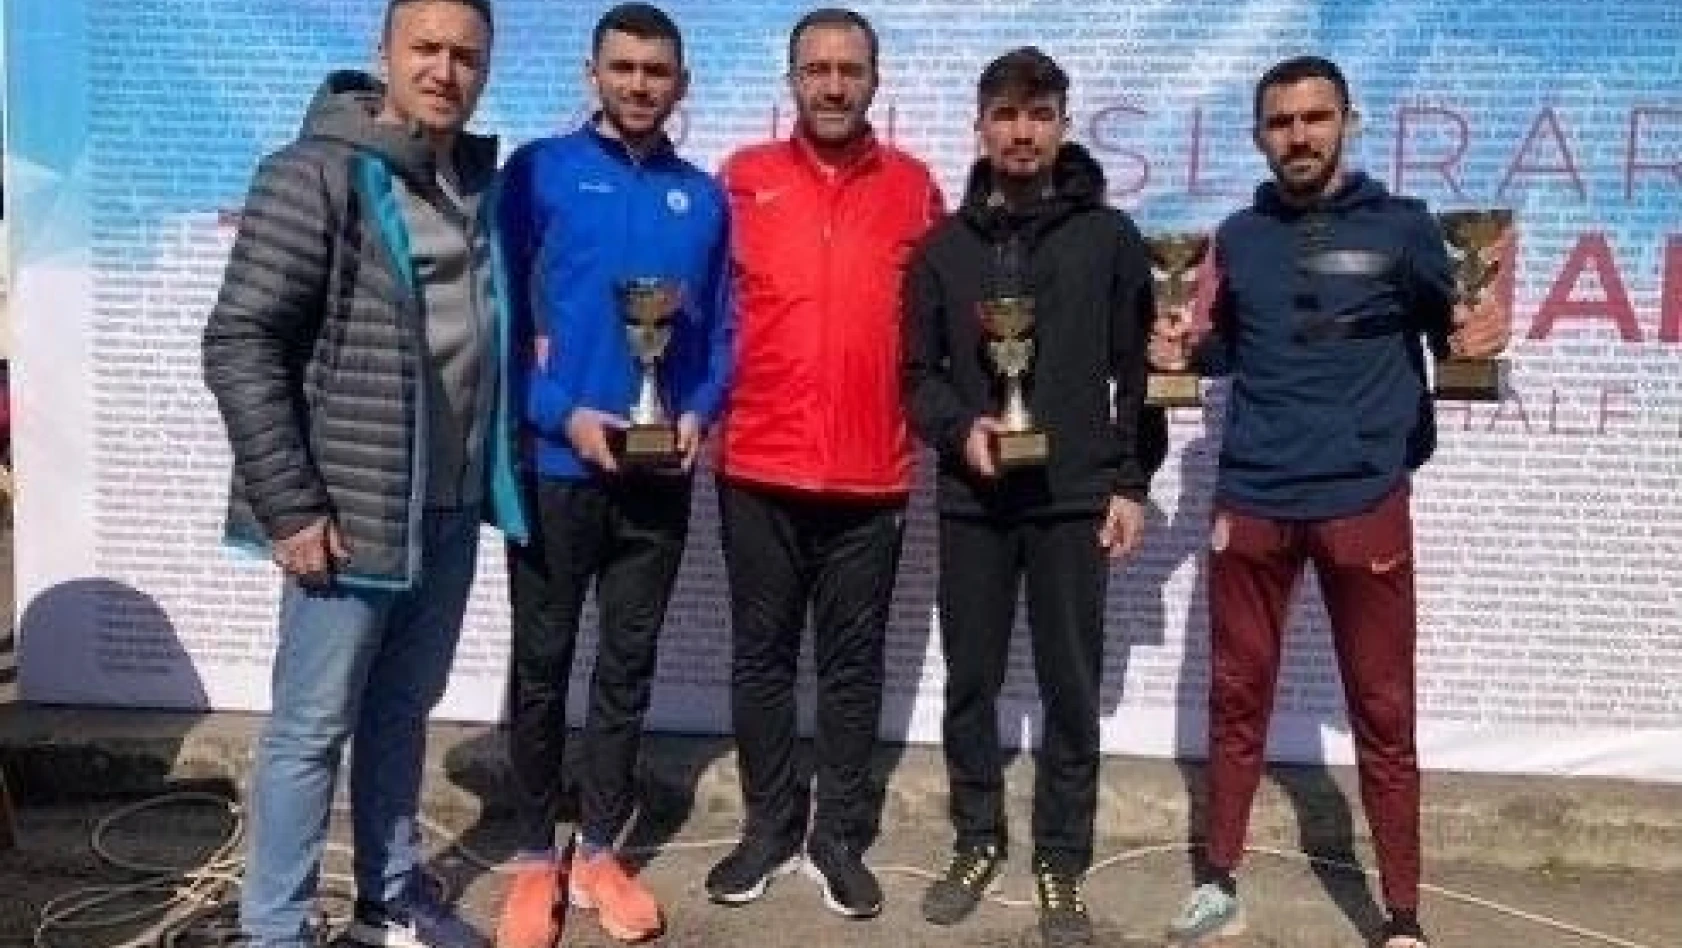 Uluslararası Trabzon Yarı Maratonundan 4 madalya ile döndüler